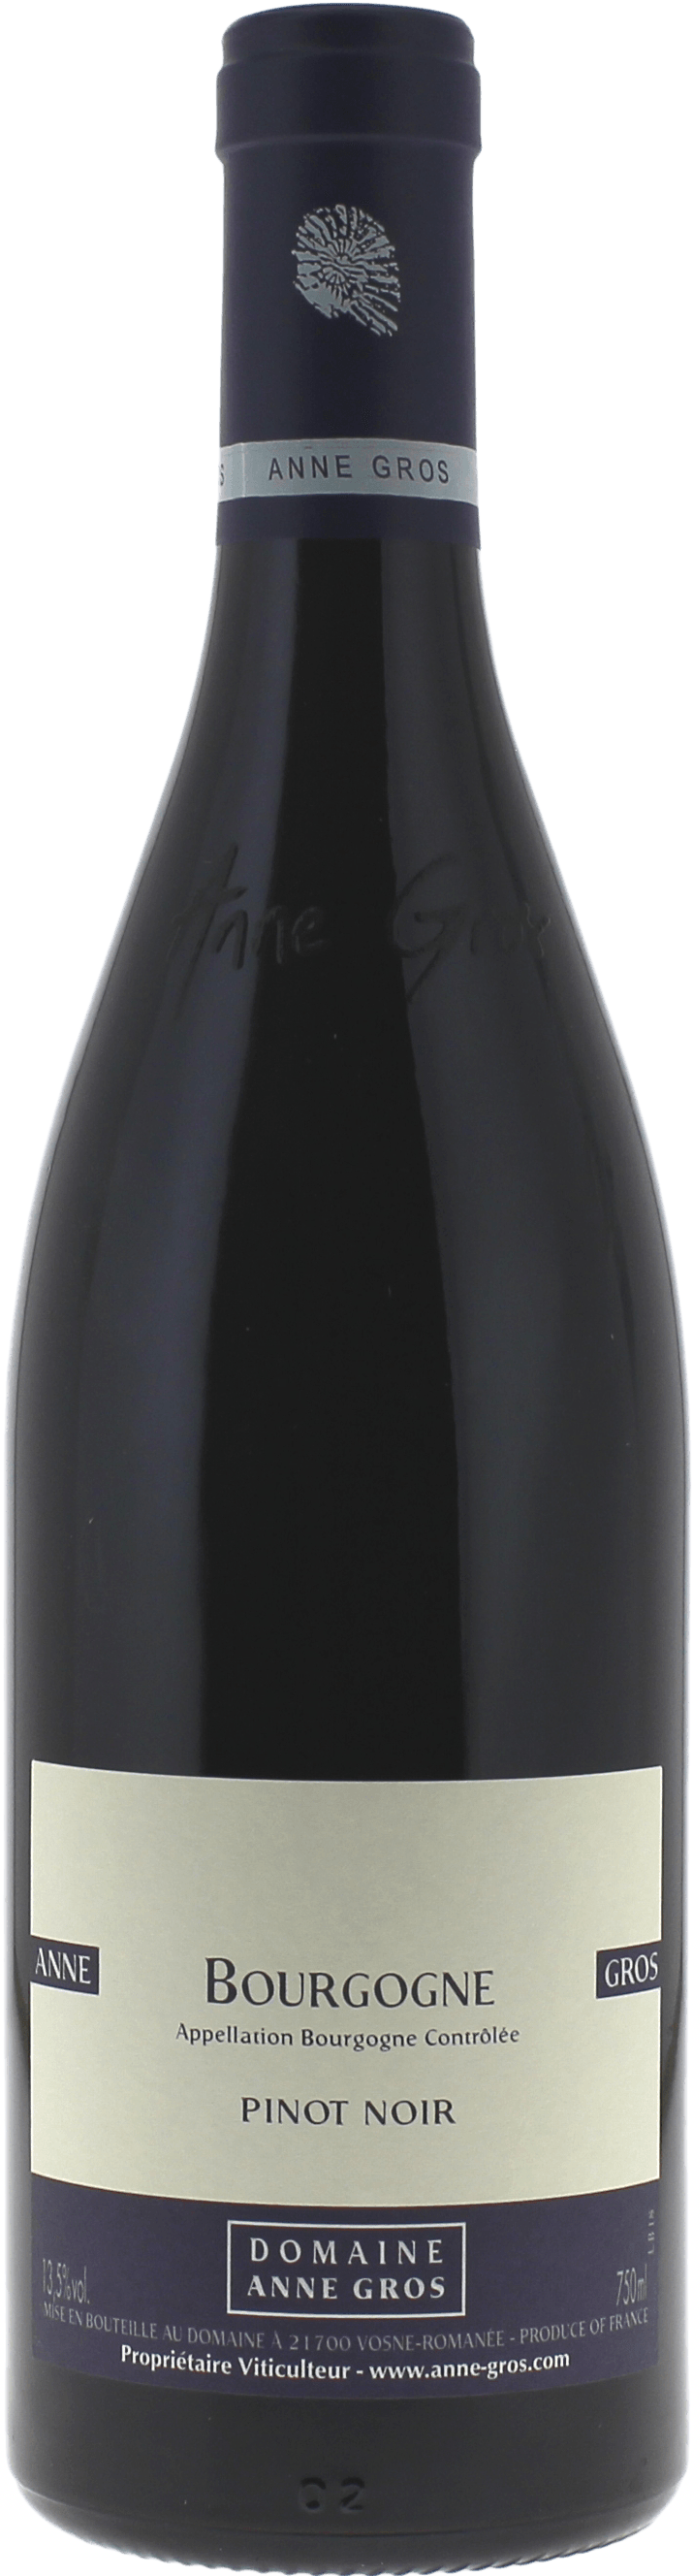 Bourgogne pinot noir 2018  GROS Anne, Bourgogne rouge